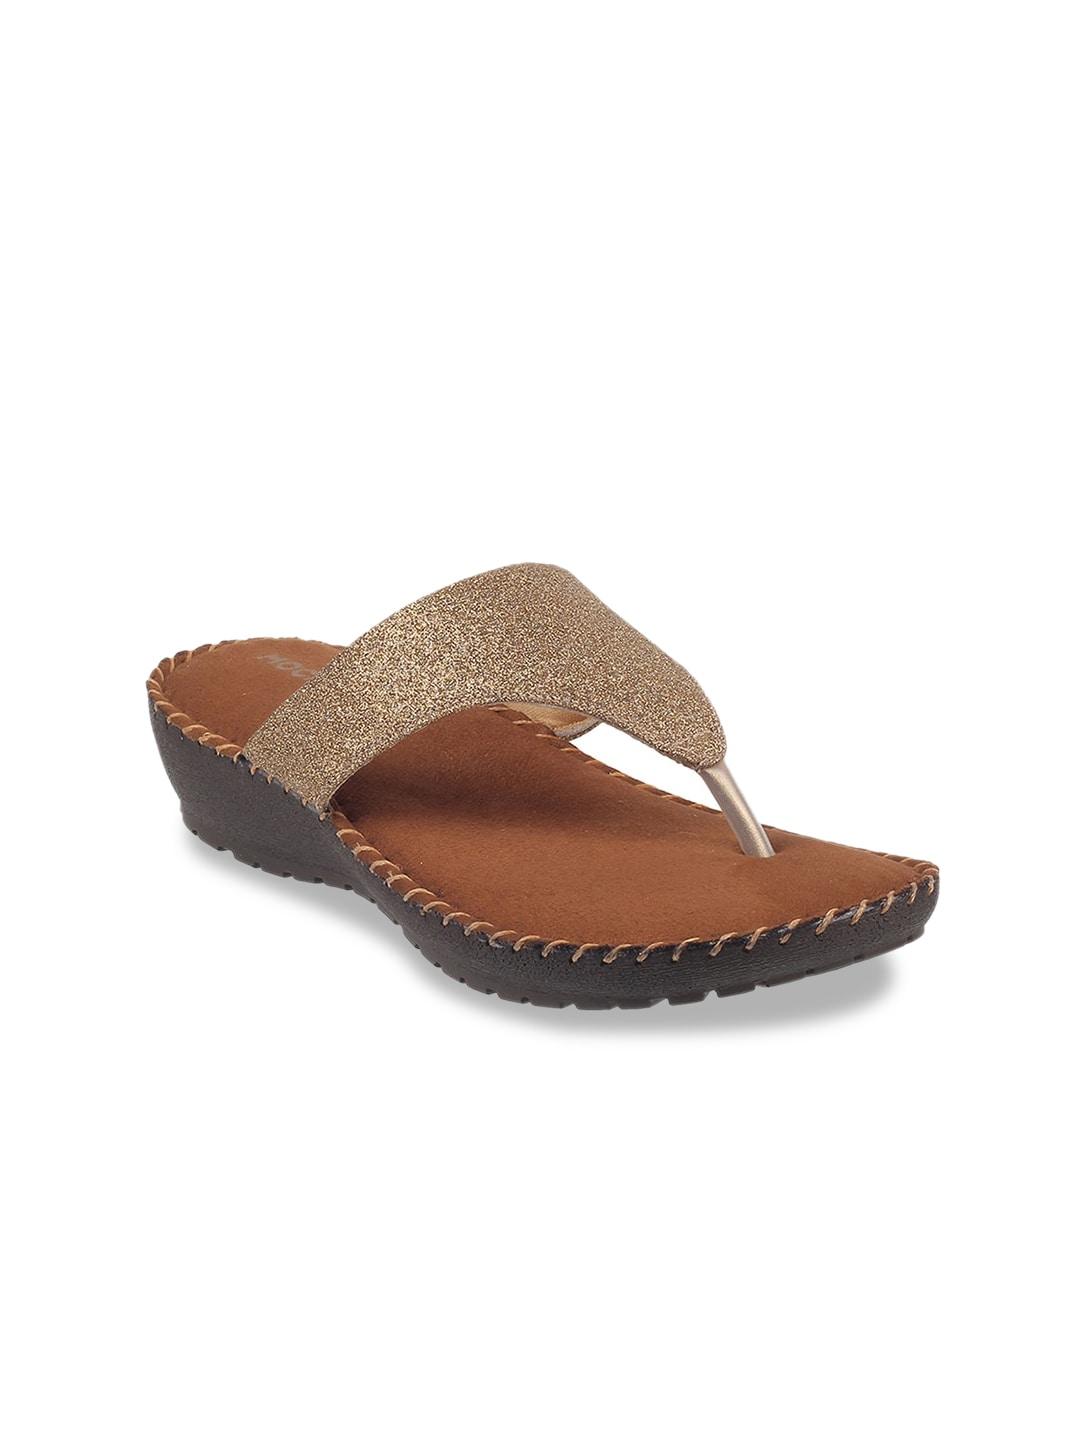 Mochi Gold-Toned & Tan Embellished Wedge Sandals